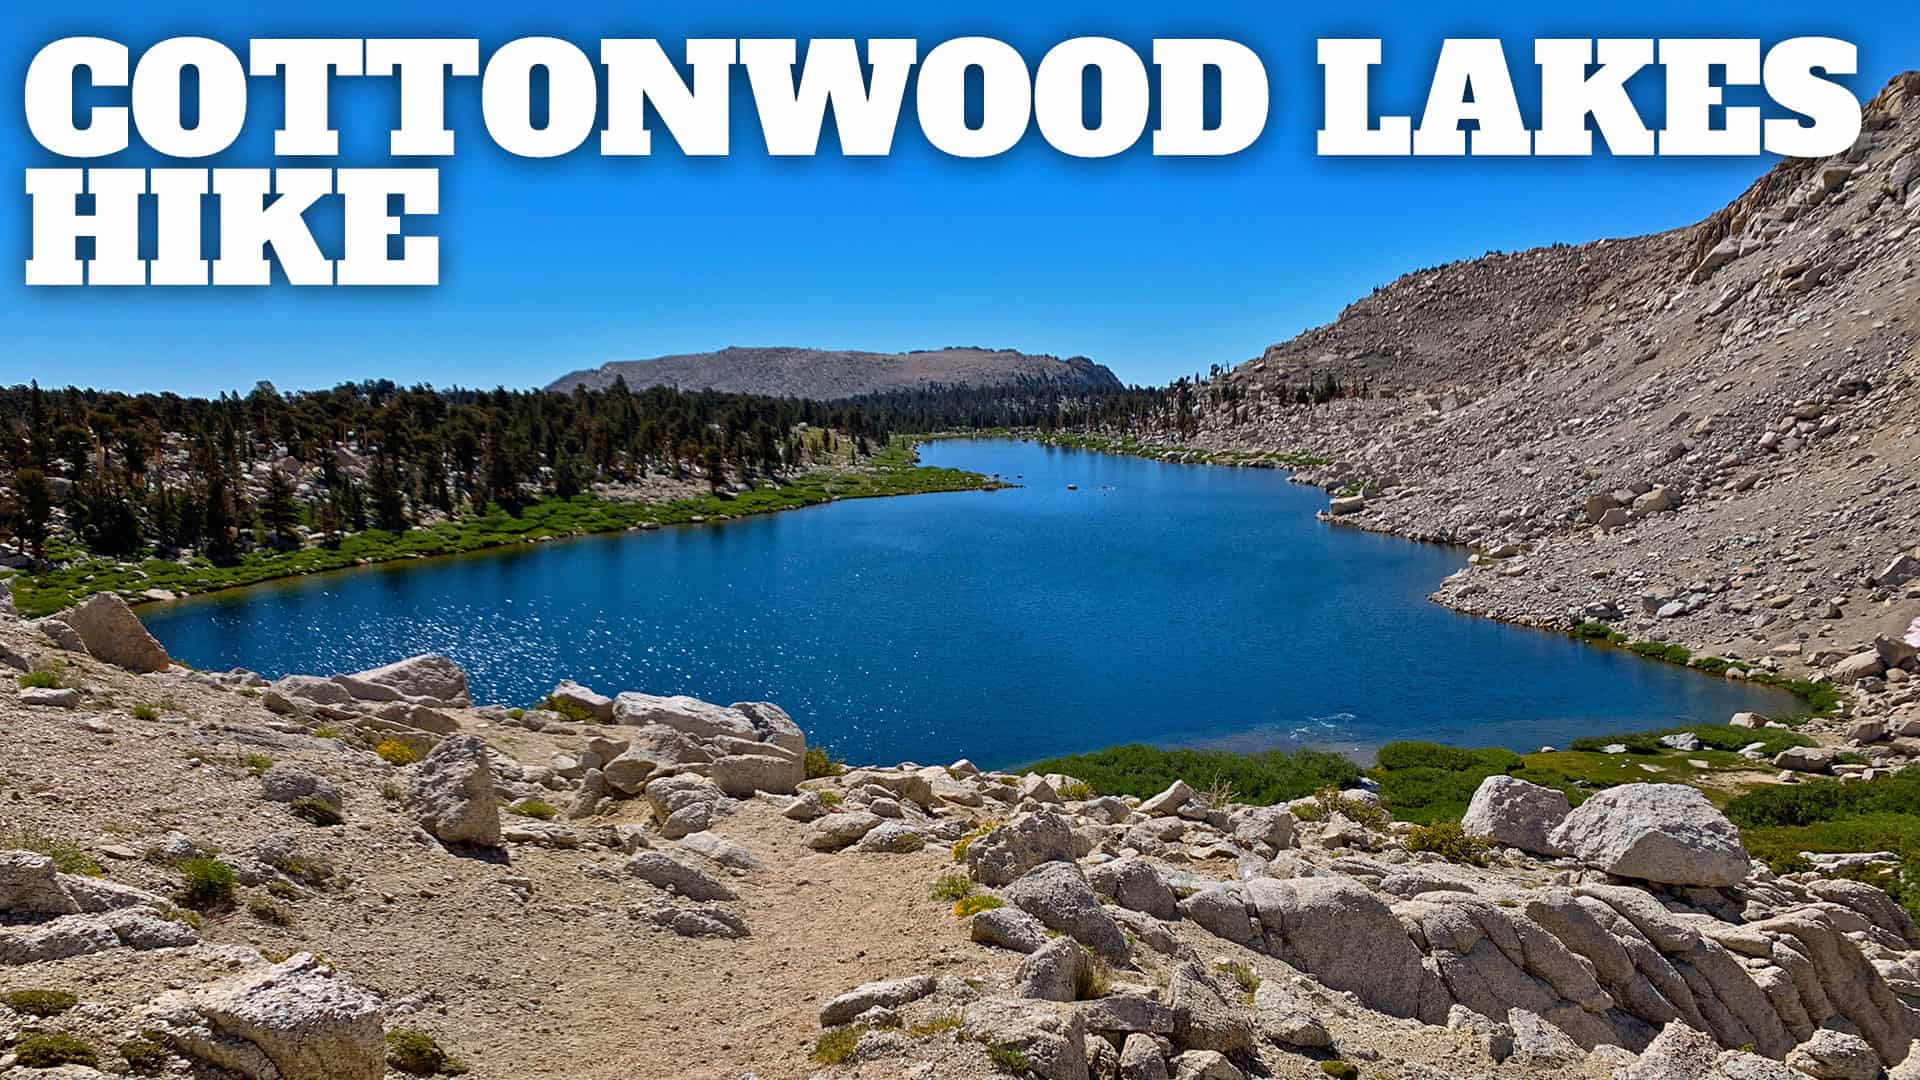 Cottonwood Lakes Hike